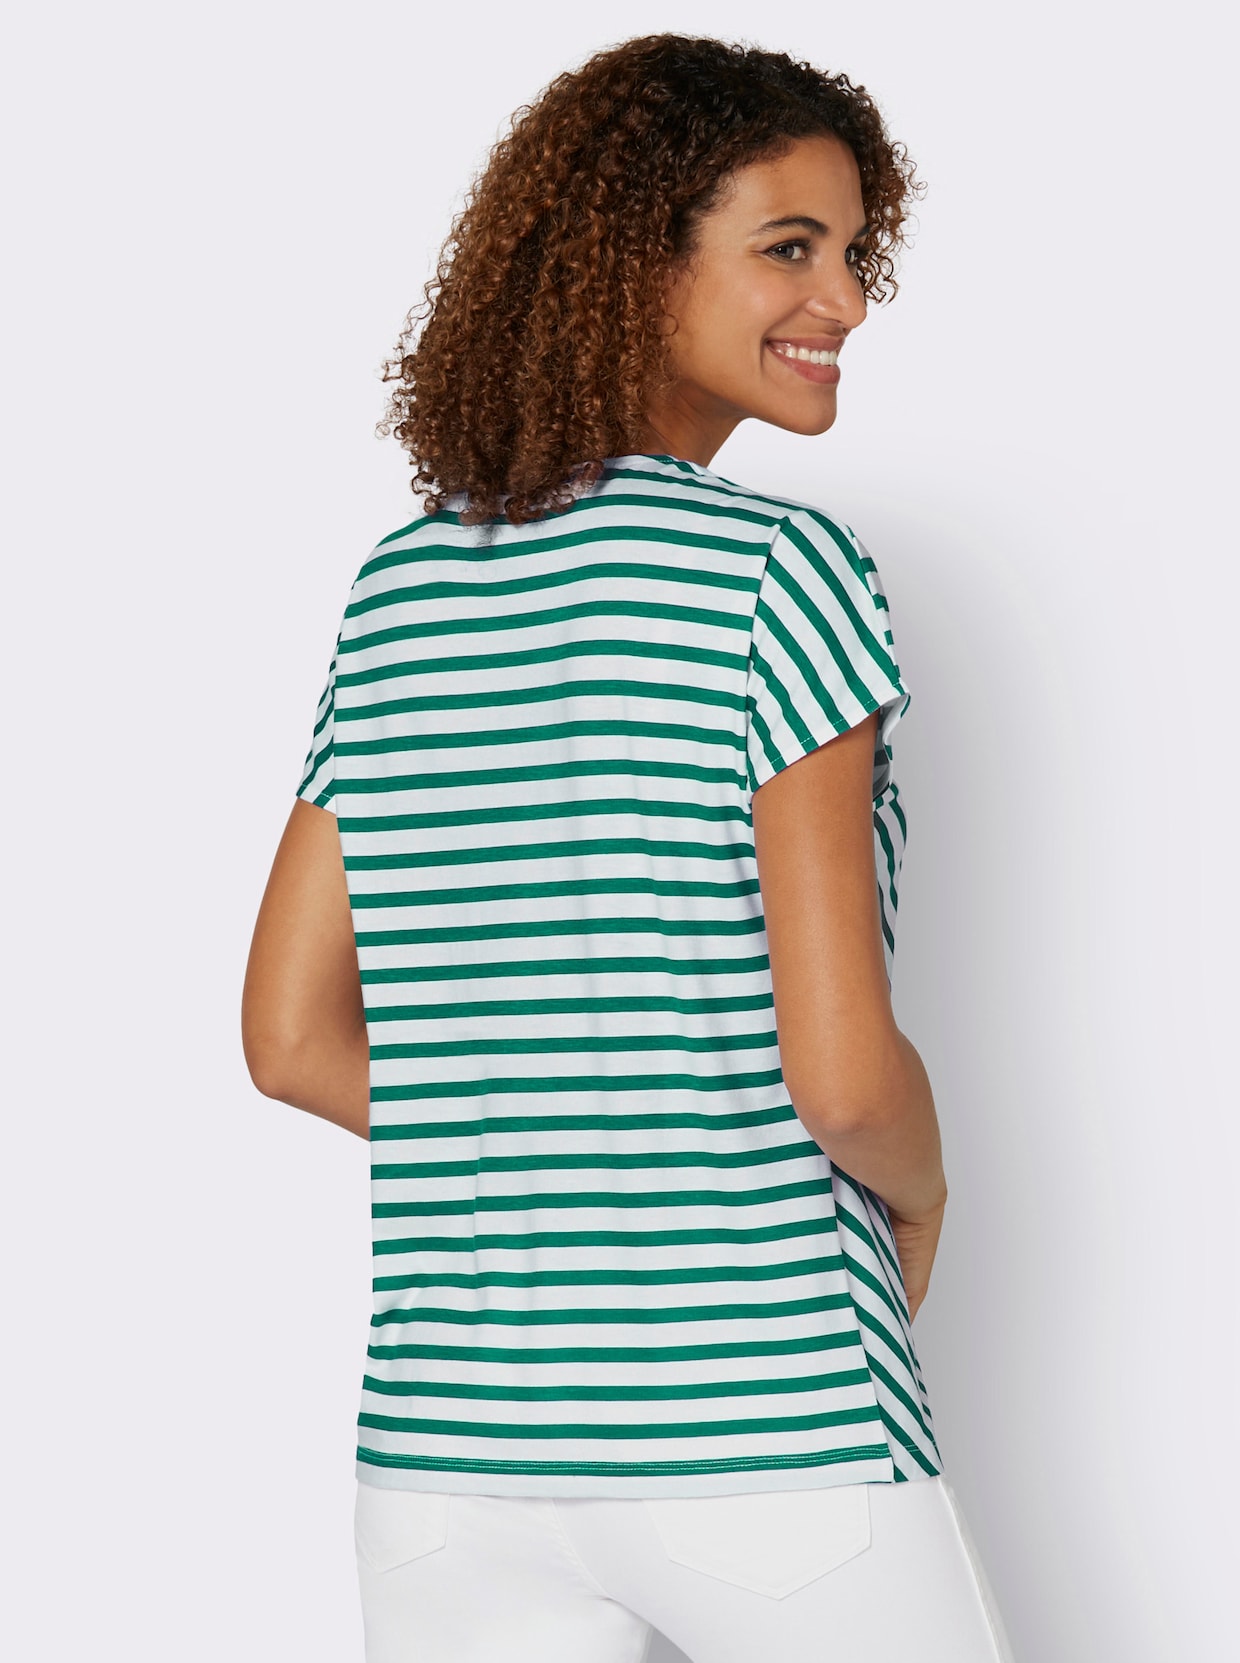 Proužkované tričko - zelená-bílá-proužek